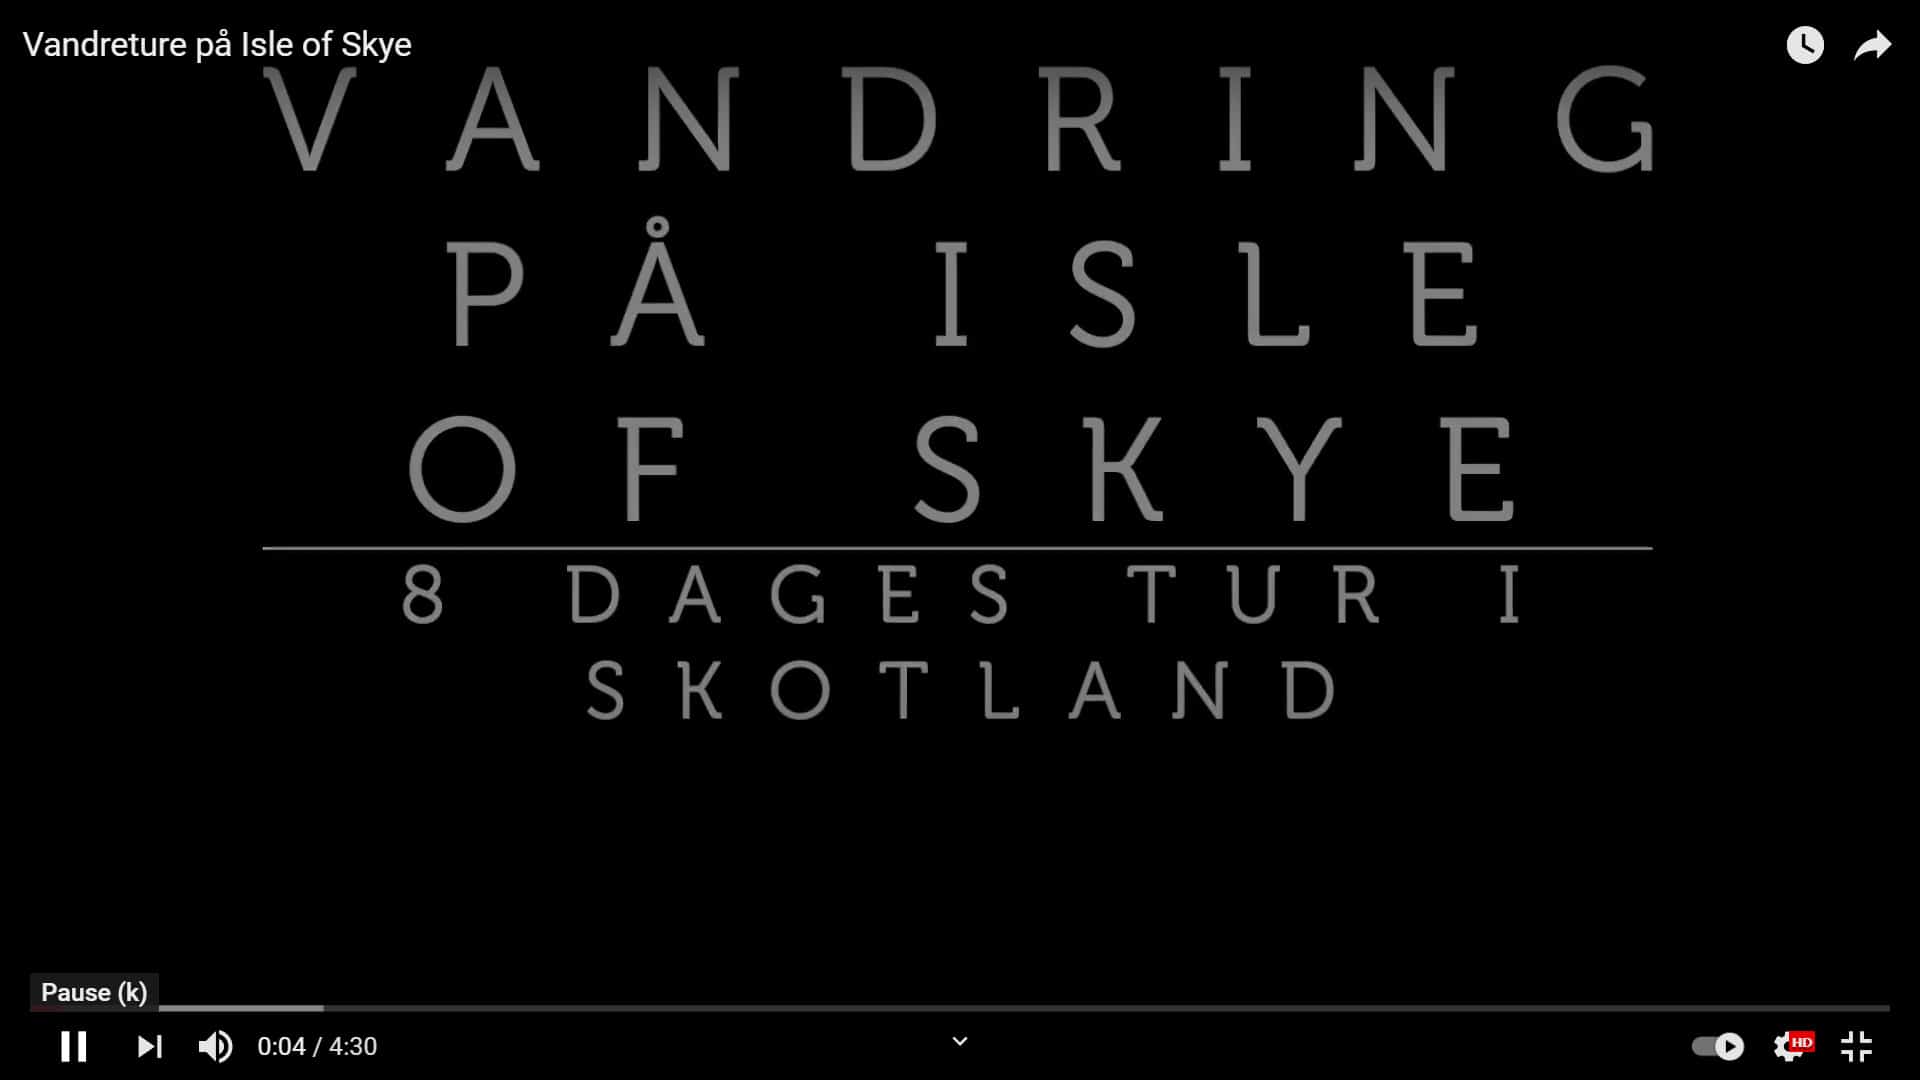 Info-video: Vandreture på Isle of Skye